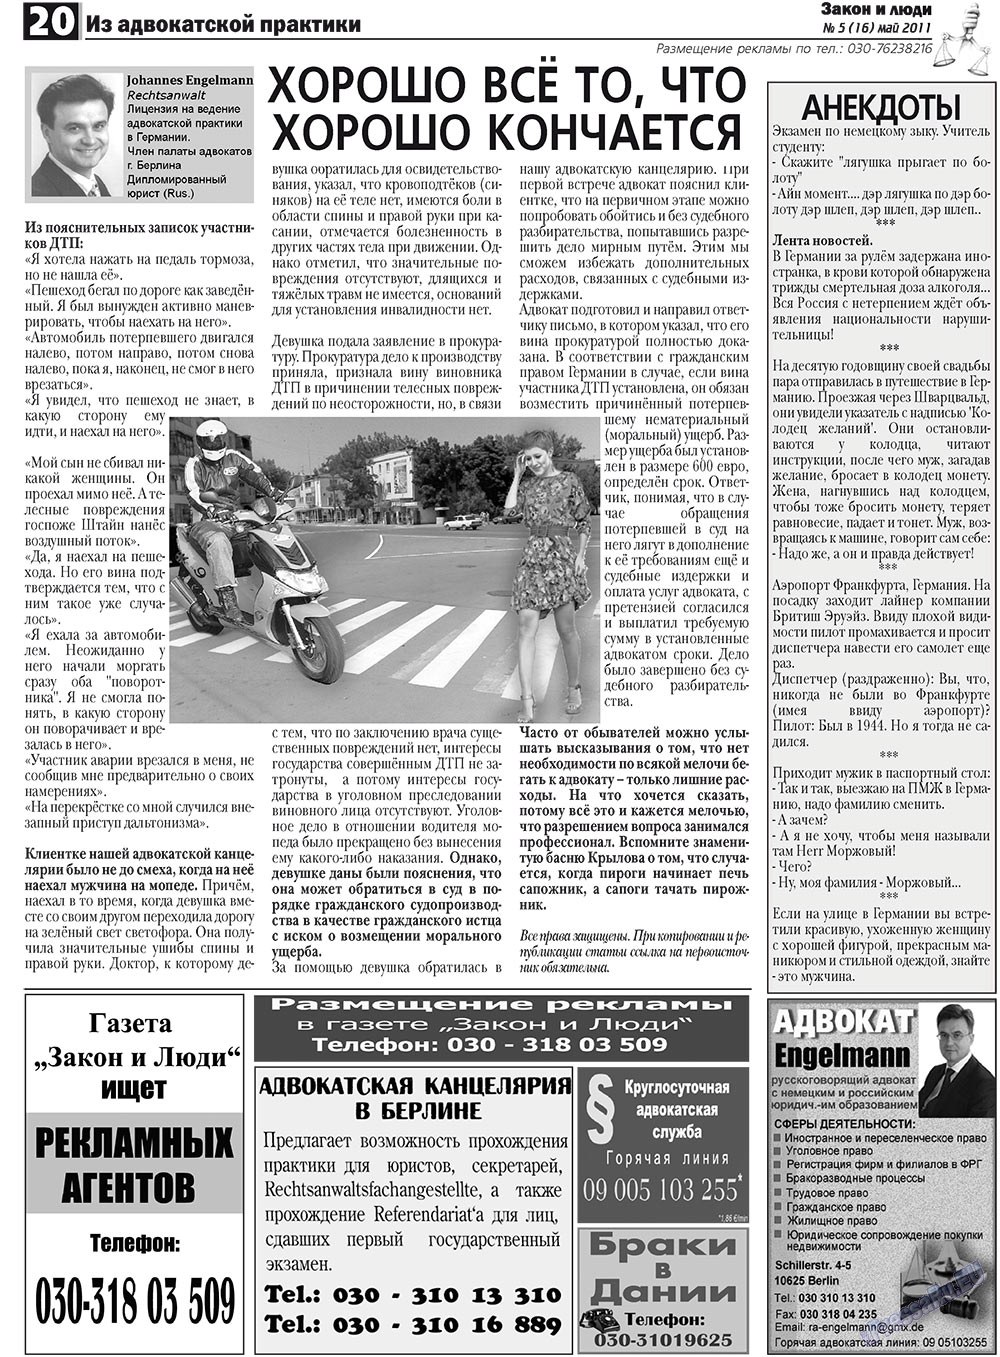 Закон и люди, газета. 2011 №5 стр.20